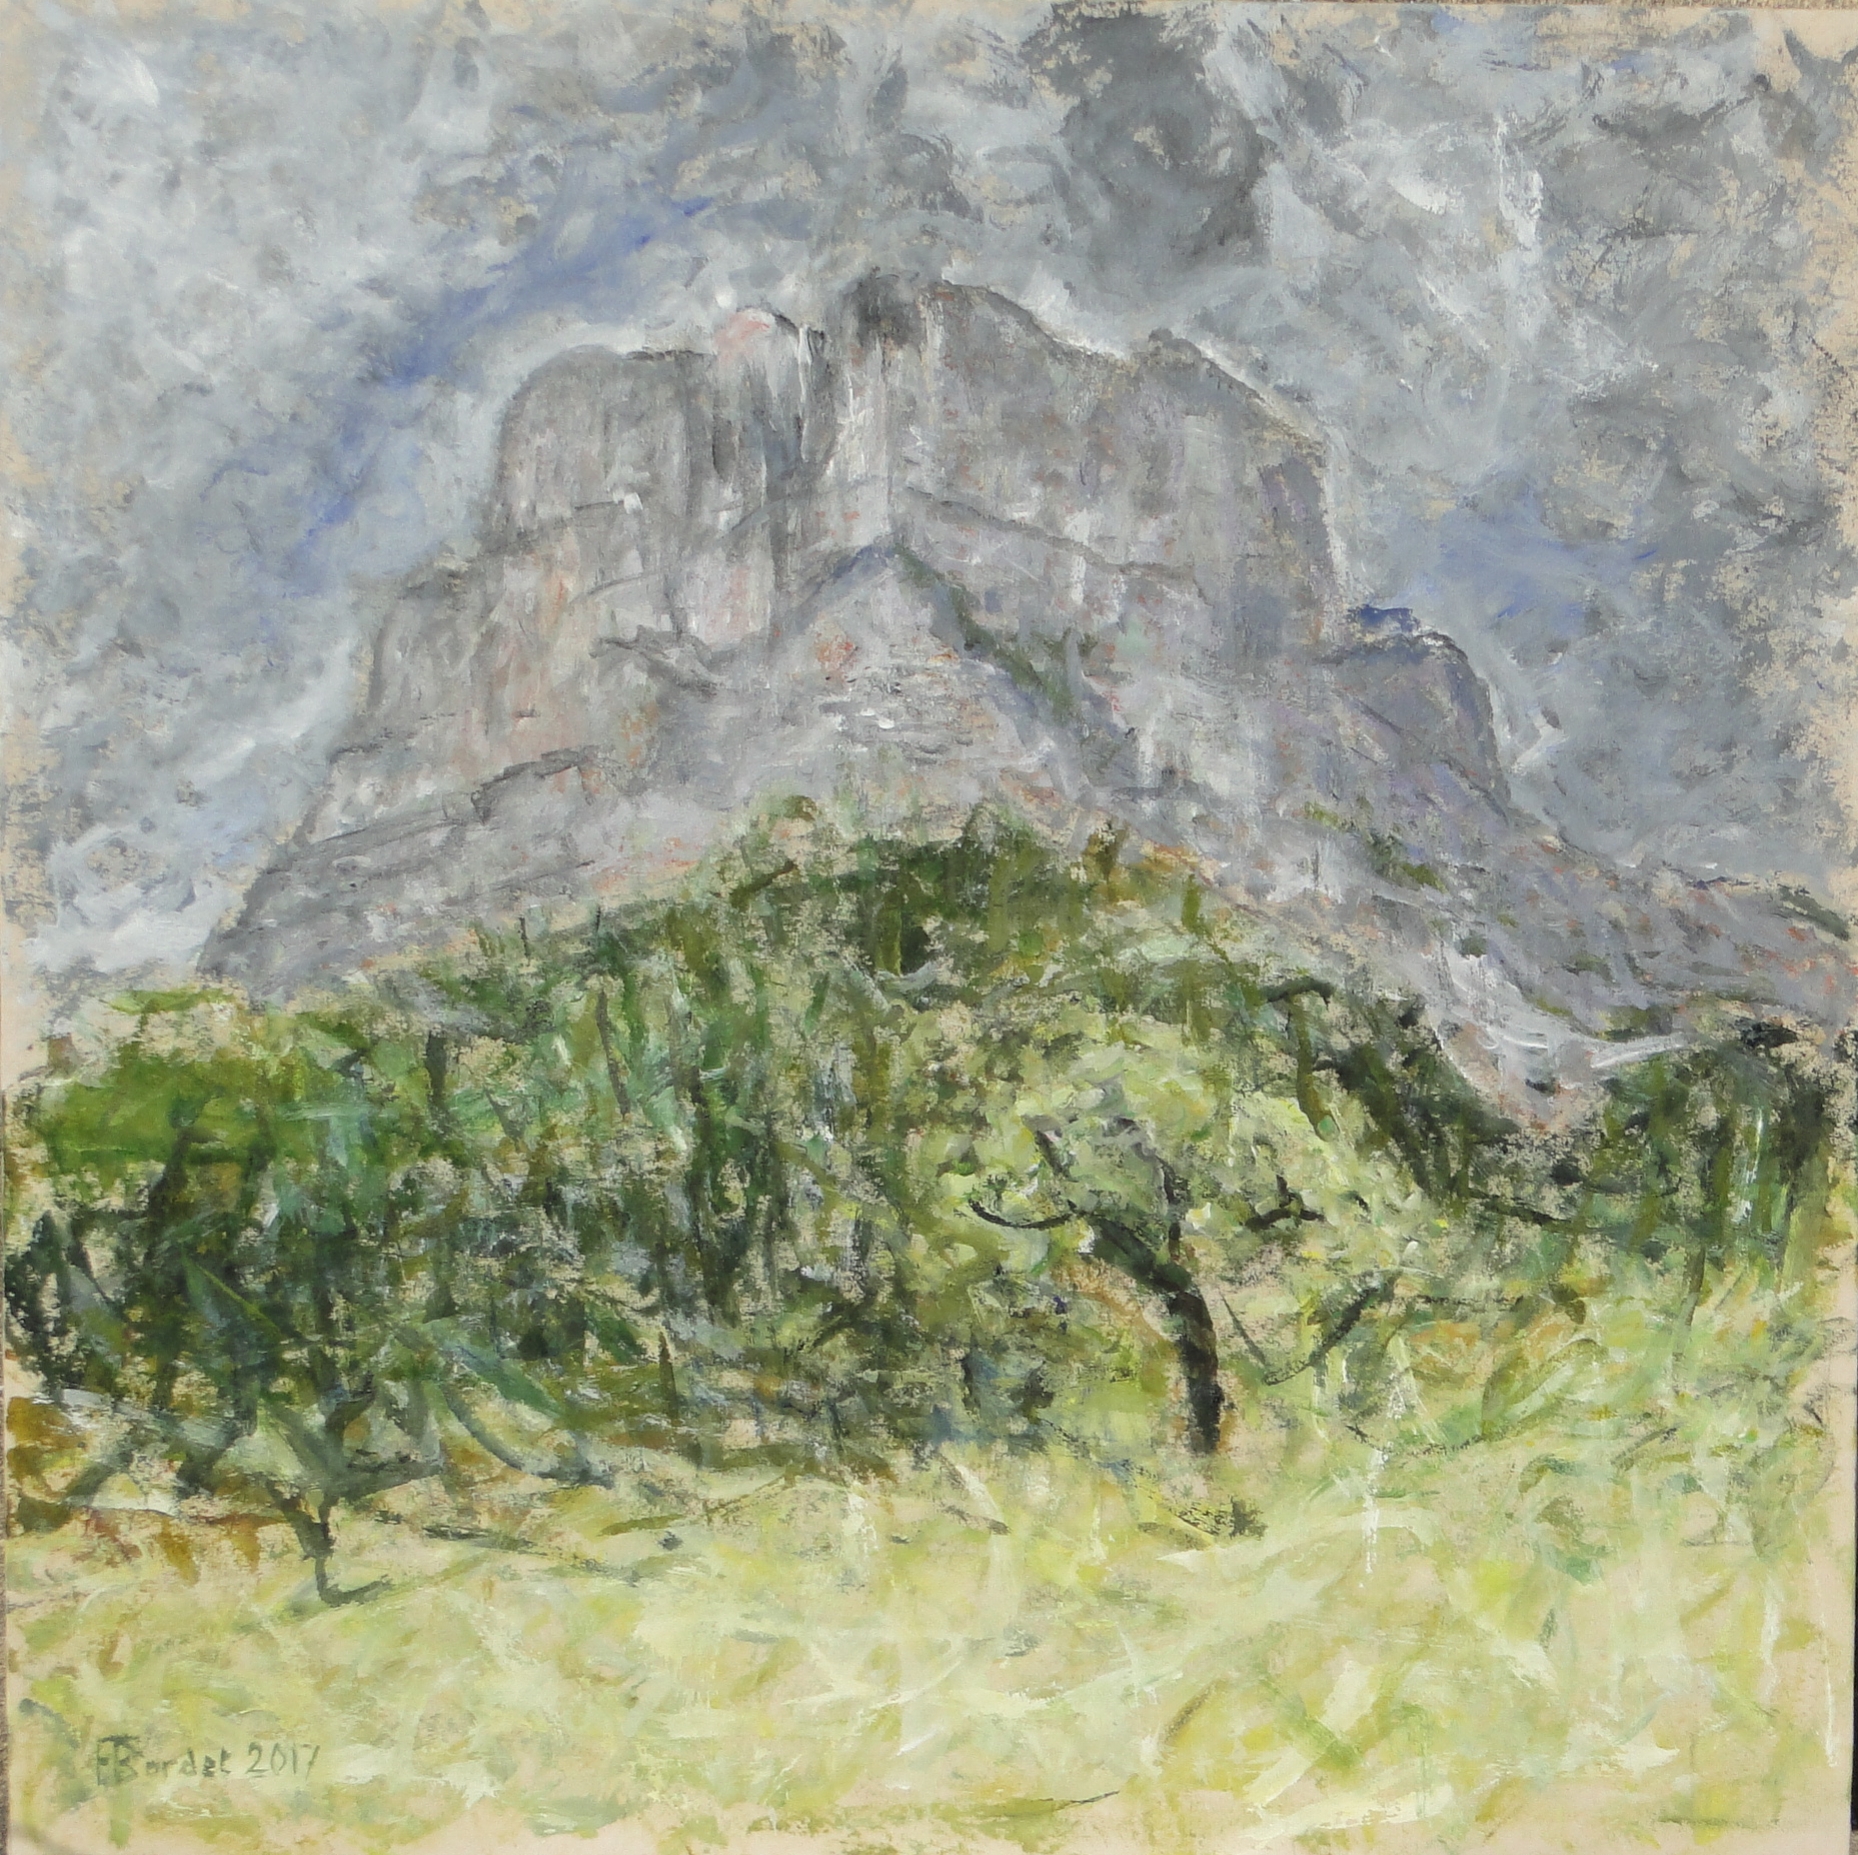 Rocher d'Archiane, acrylique sur toile, 75 x 75 cm